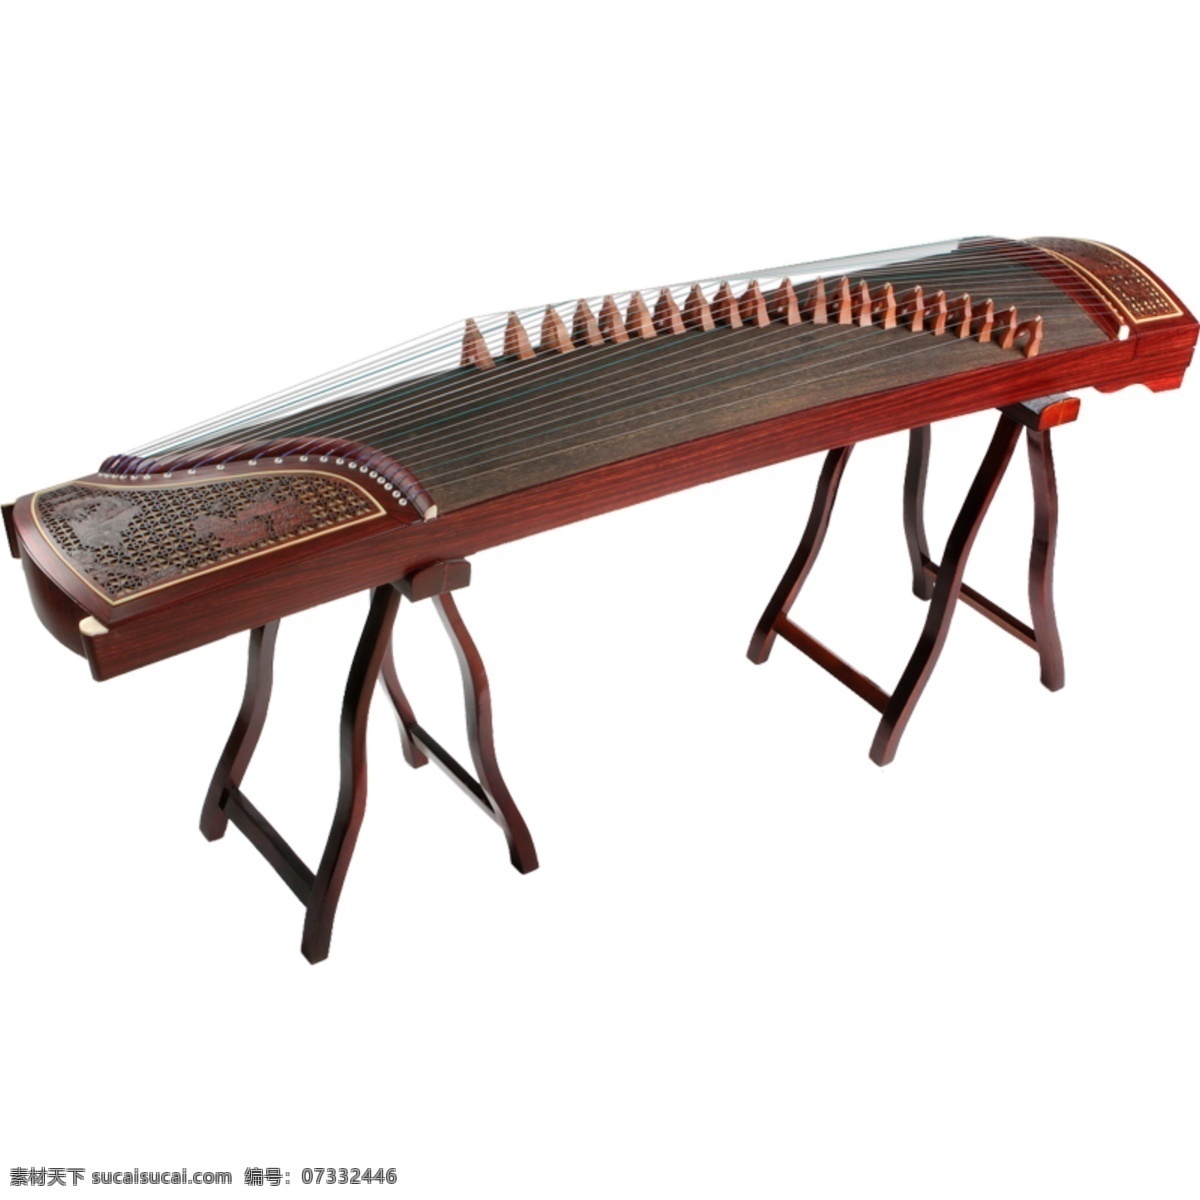 古筝 产品实物 古琴 乐器 琴 红木 实木 中国风 素材图